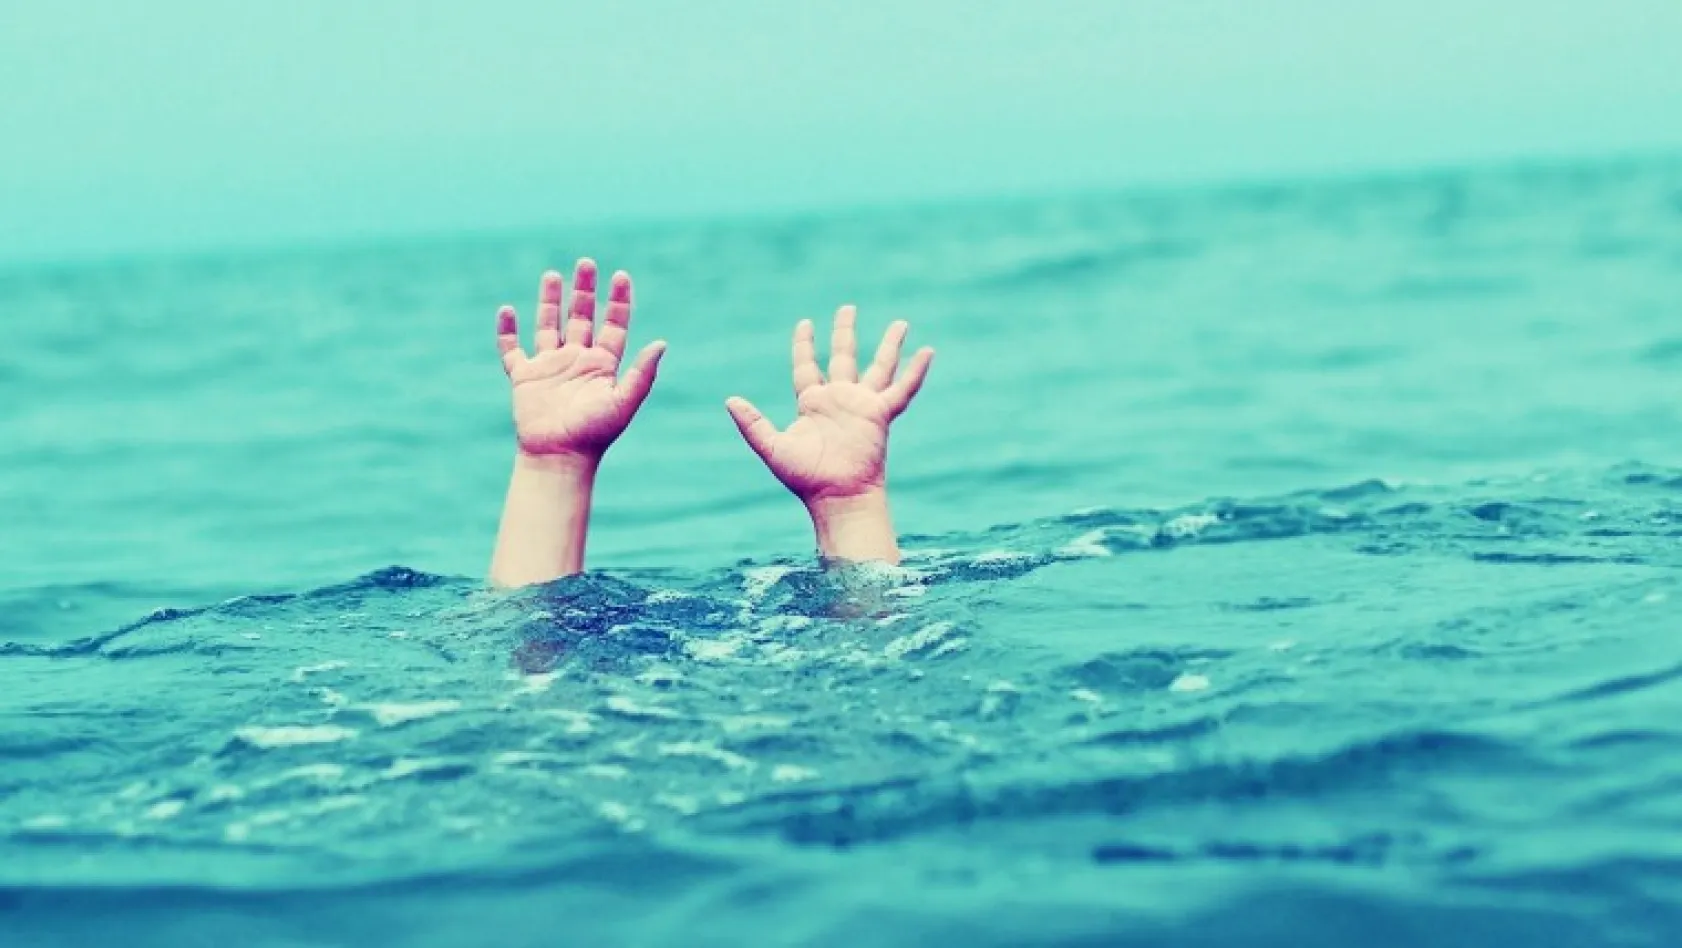 Murat nehri'ne giren çocuk boğuldu